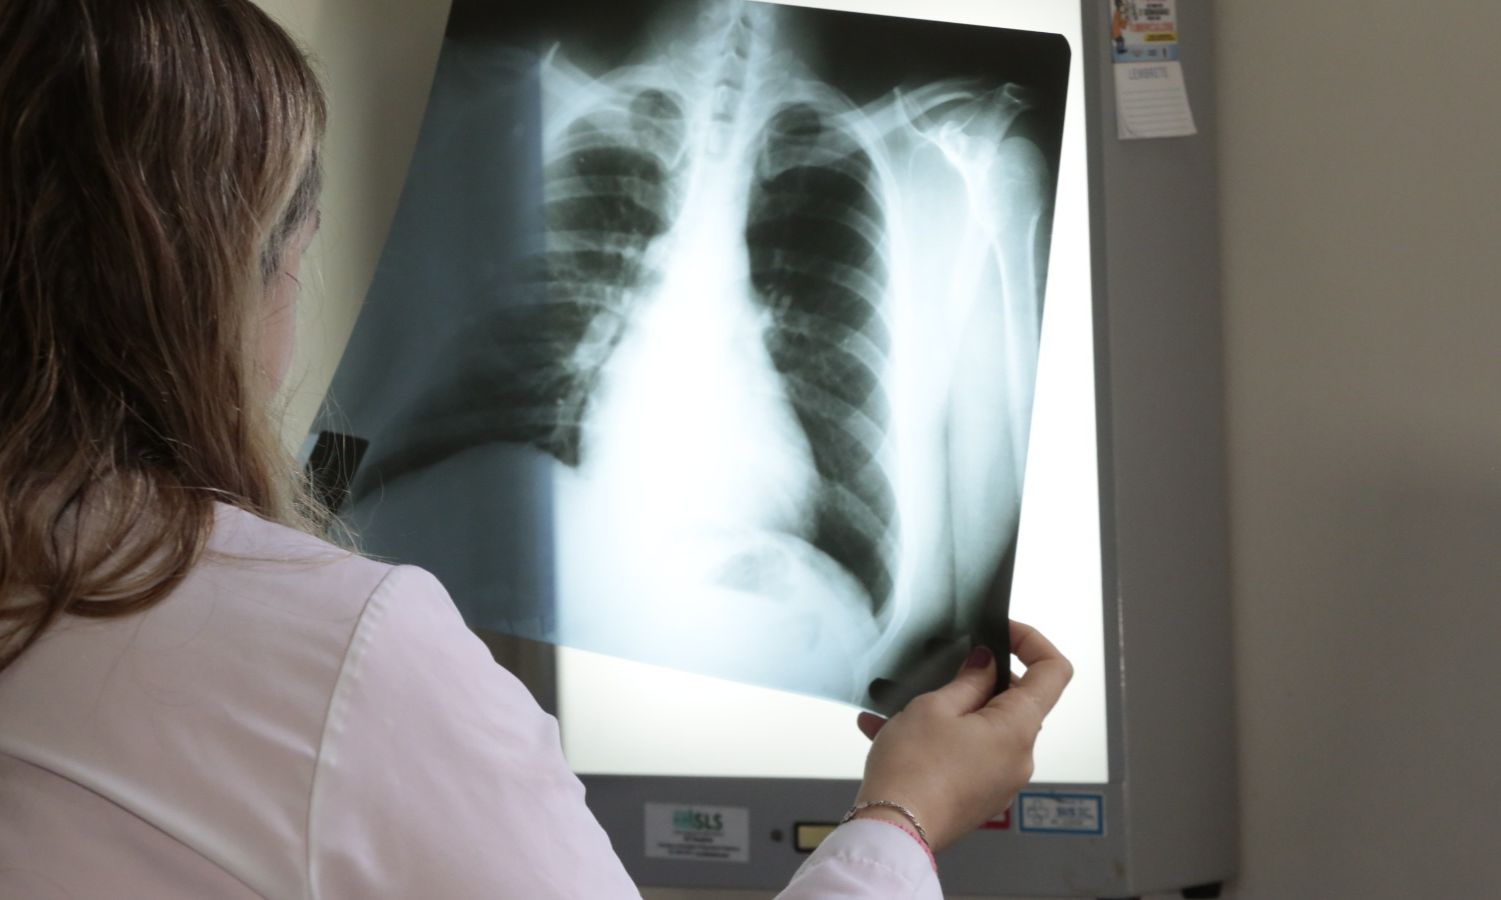 Ministério da Saúde destaca Joinville por atuação no tratamento da tuberculose